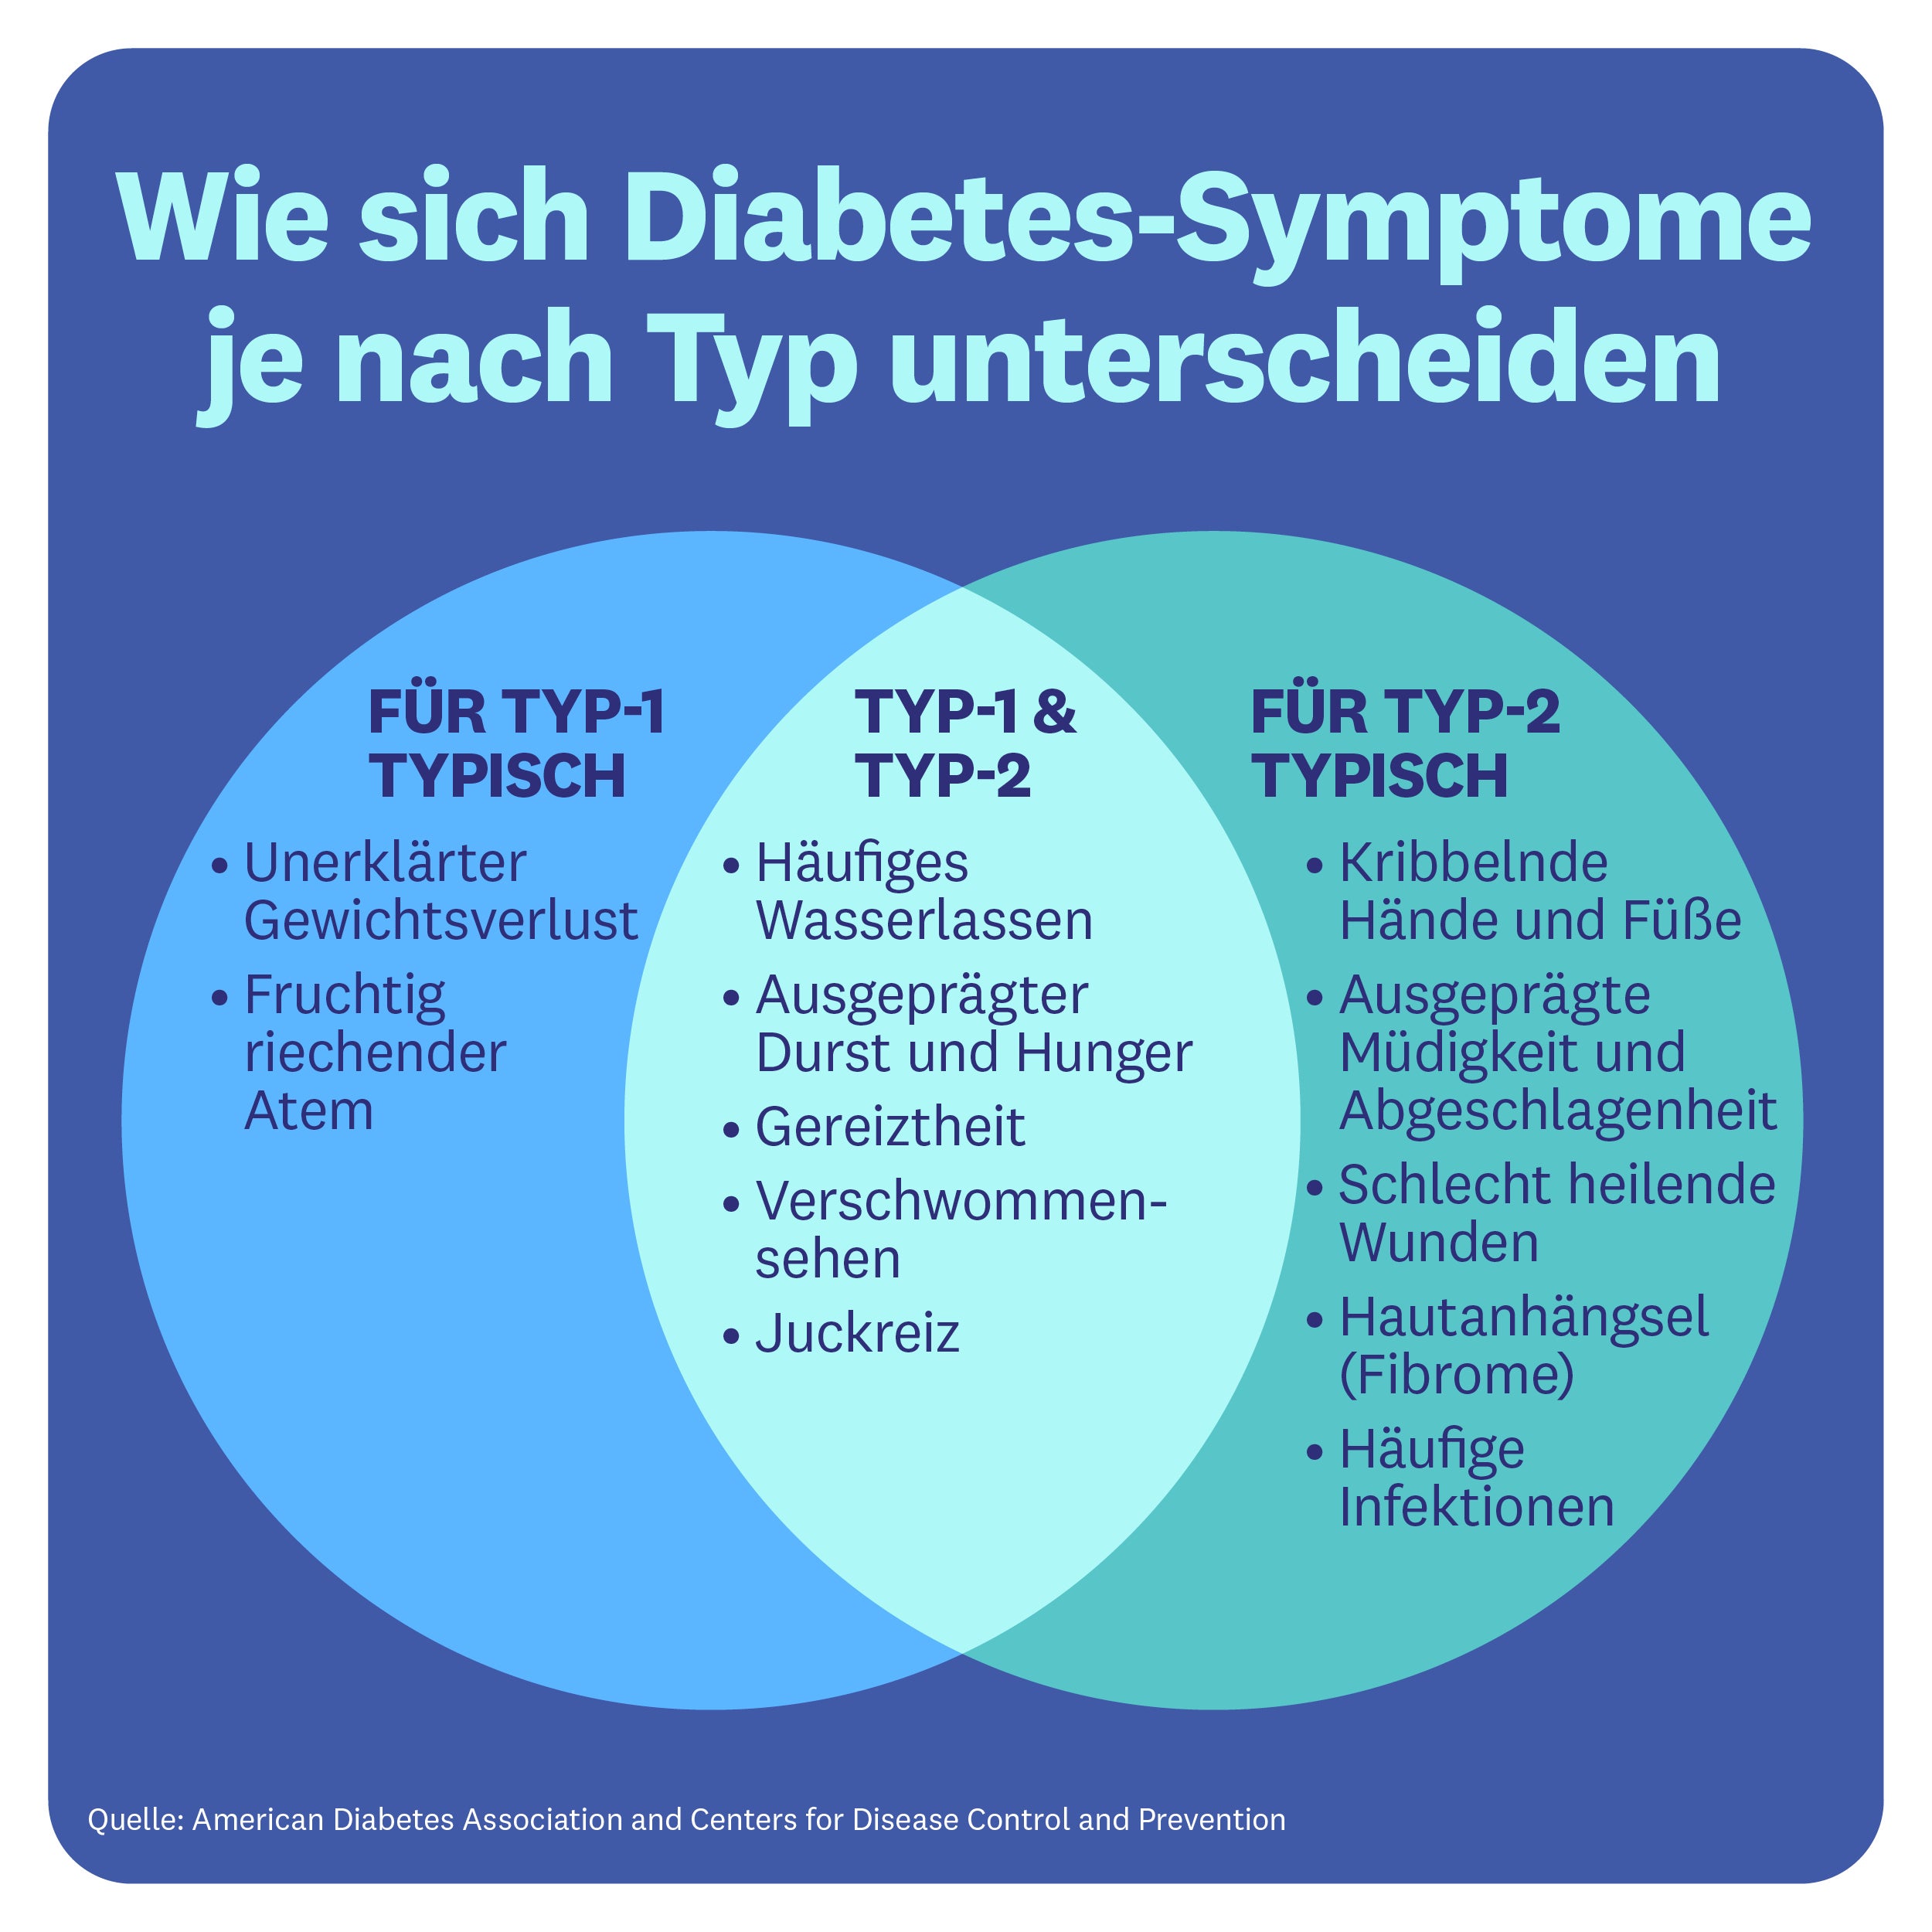 Diabetes-Symptome je nach Diabetes-Typ